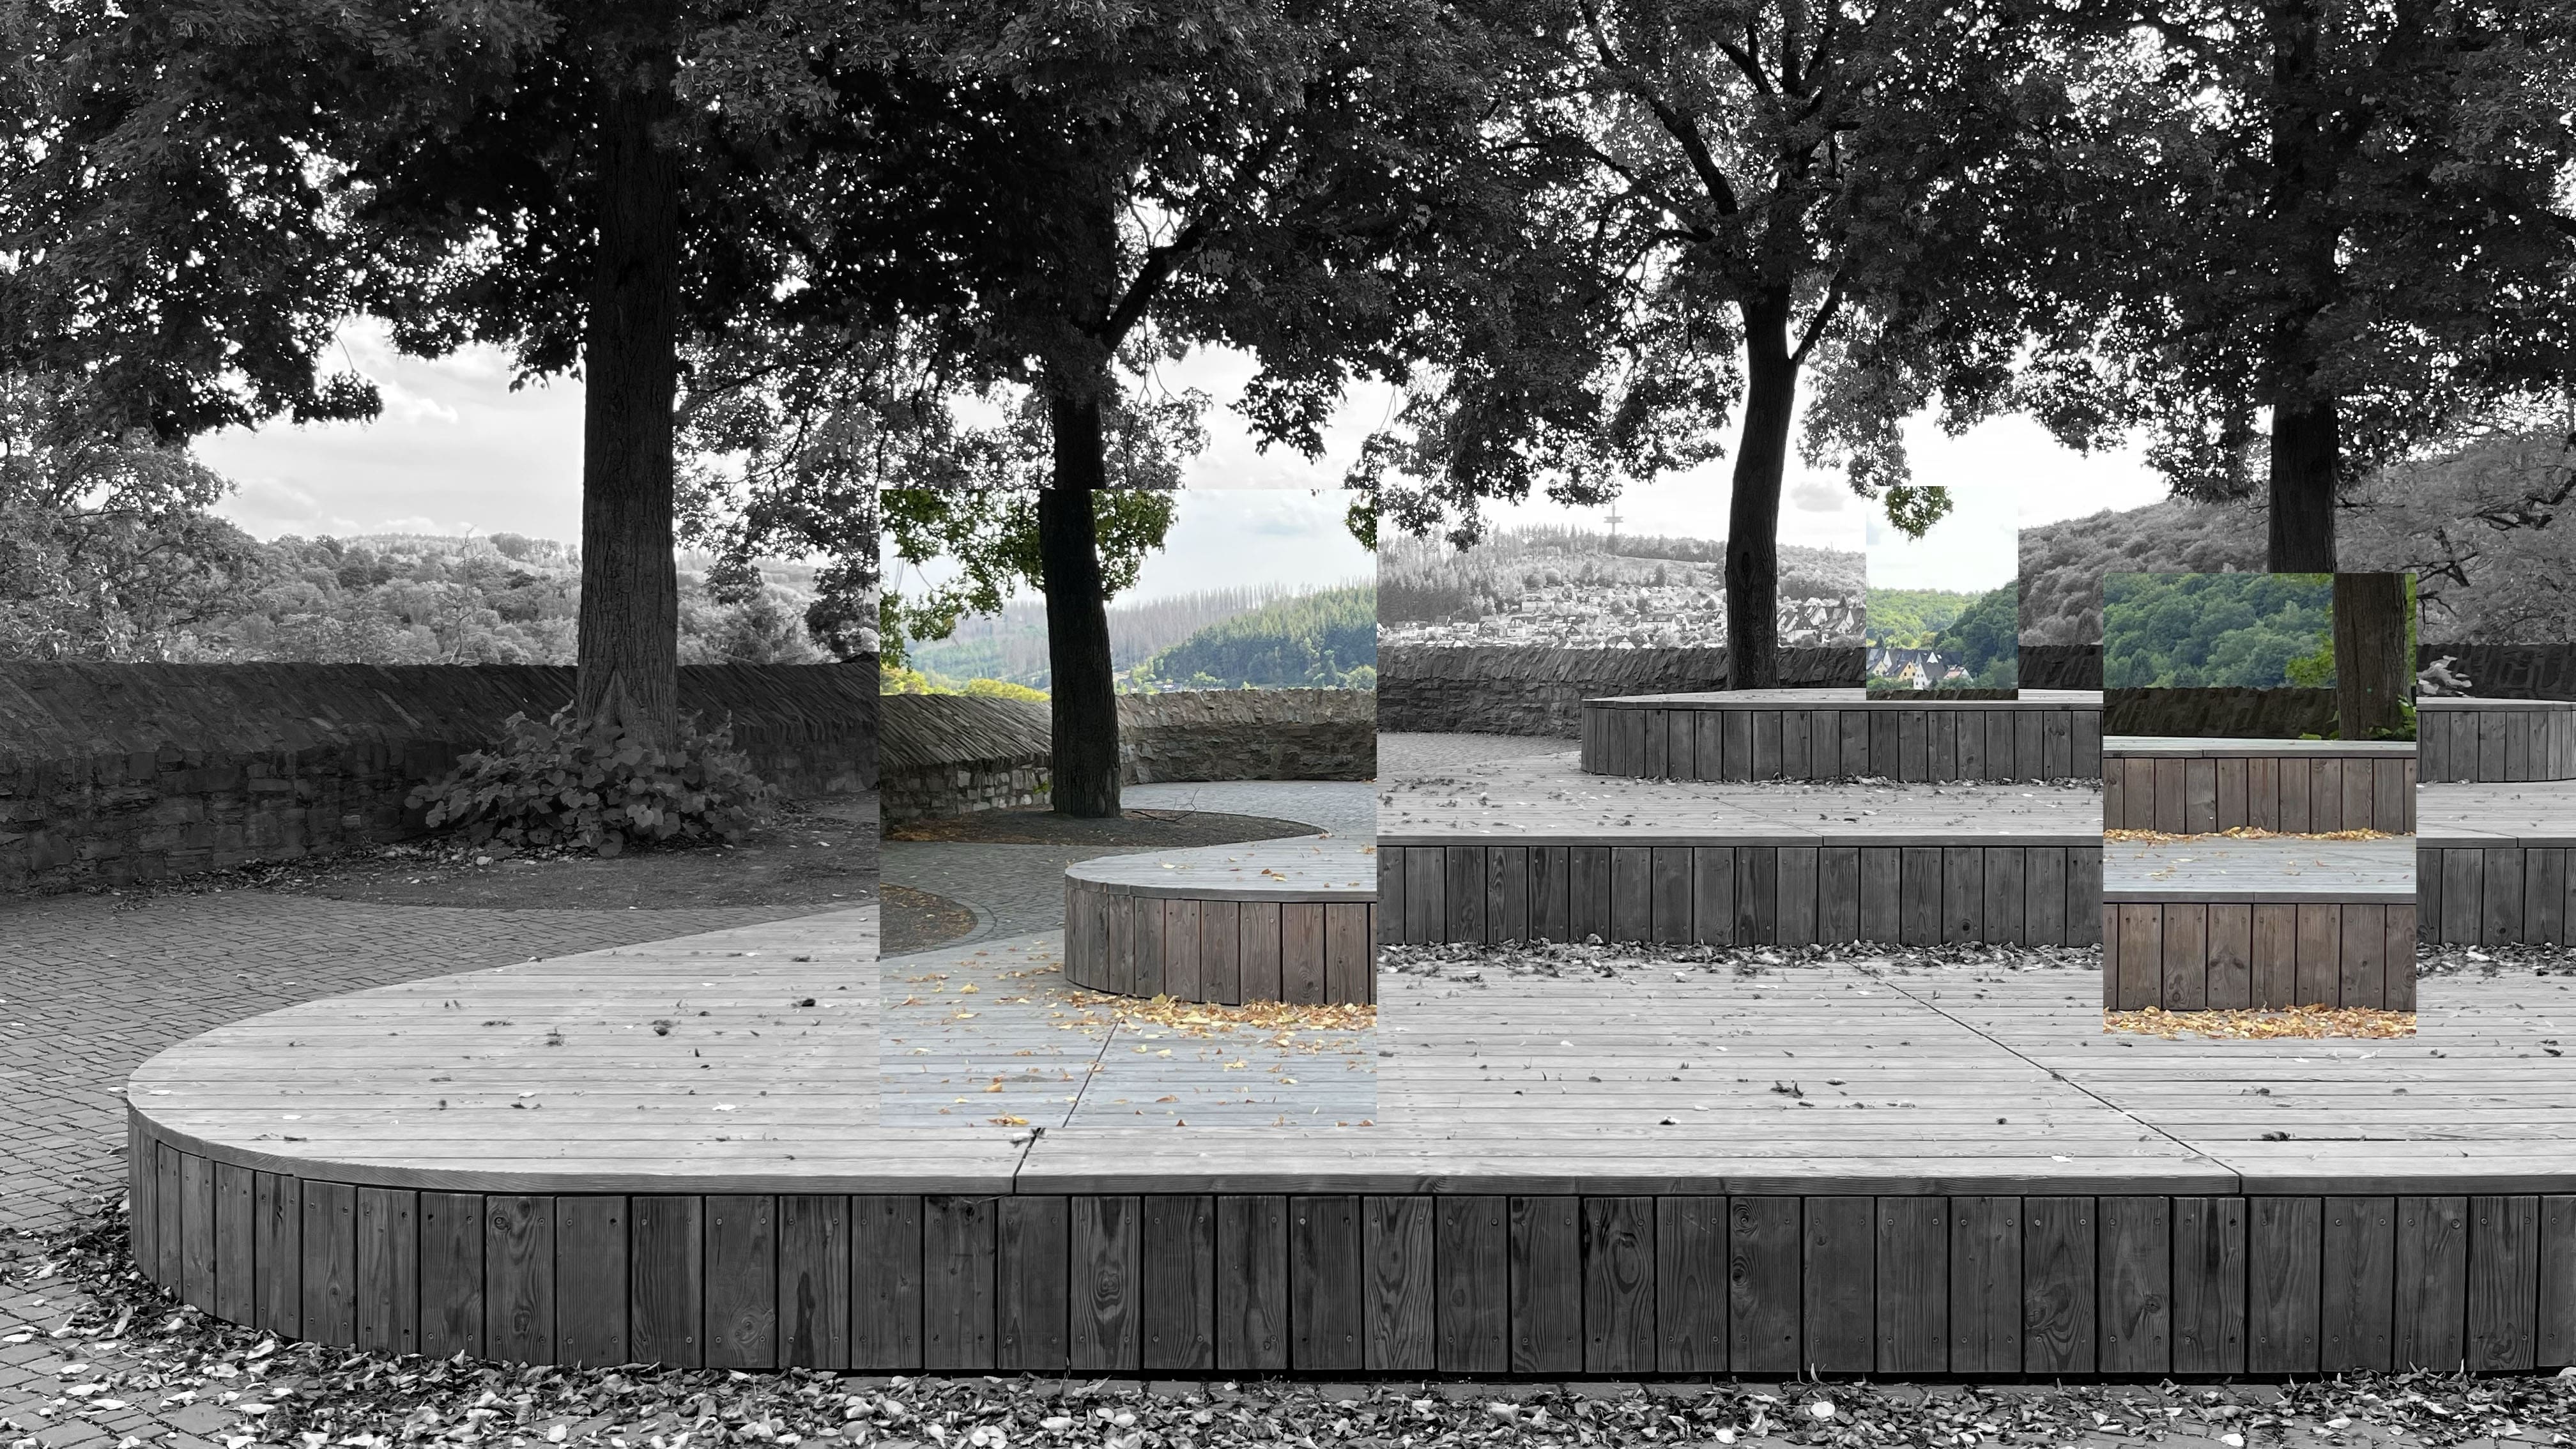 Im Siegener Schlosspark, Sitzplattform in der Nähe des Spielplatzes, findet am 30. Sptember 2022 von 16 bis 17 Uhr die Performance "Waiting for a yawn" (Warten auf ein Gähnen) statt - Foto Kunstverein Siegen